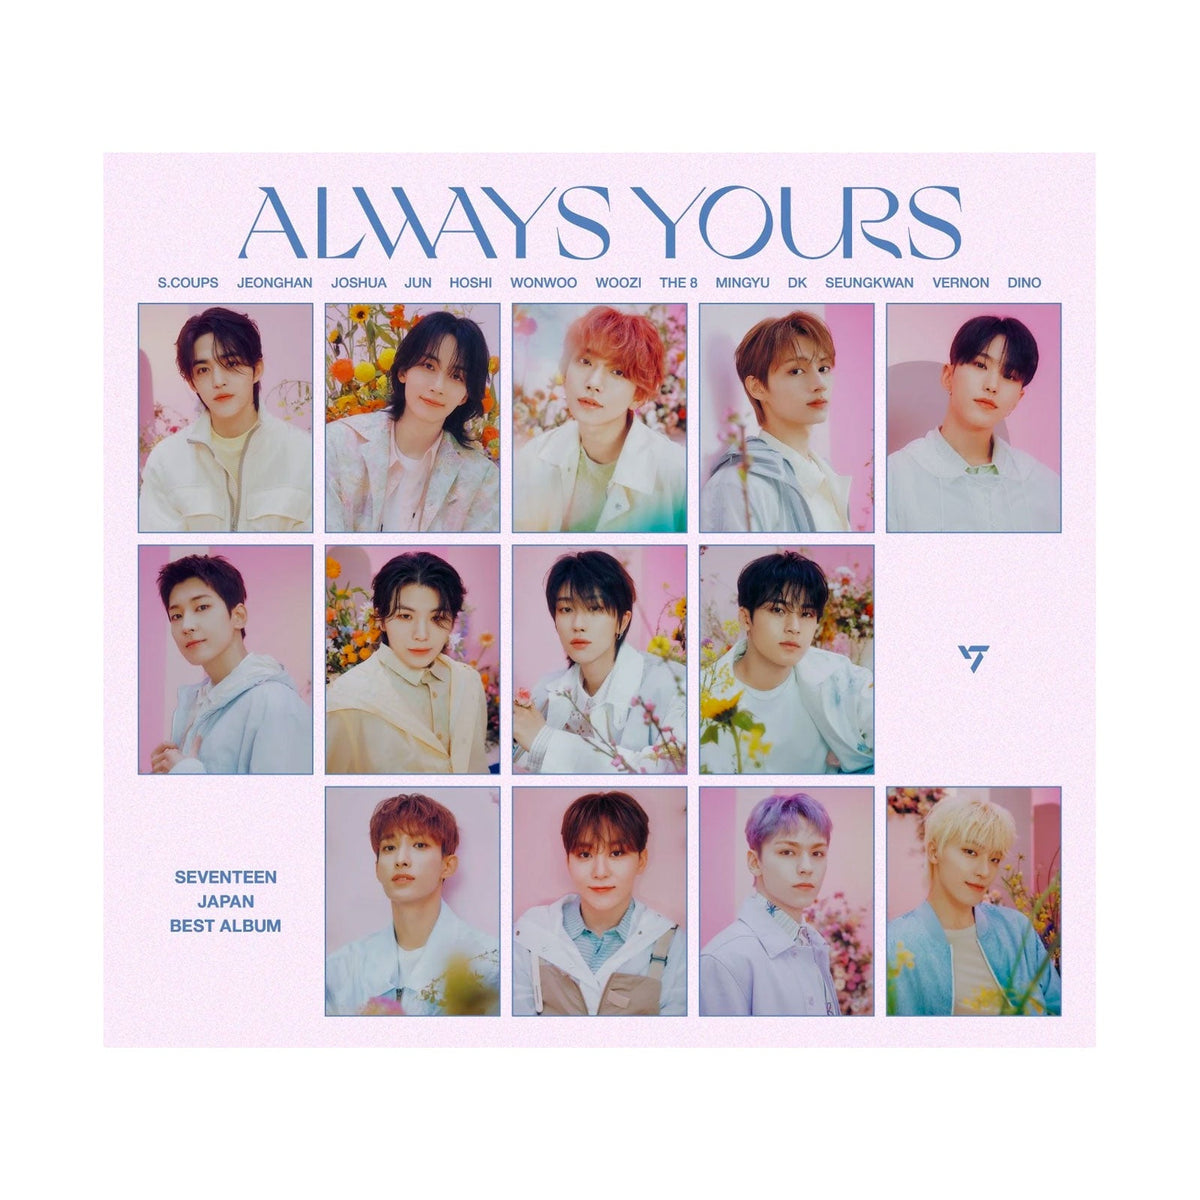 SEVENTEEN JAPAN BEST ALBUM「ALWAYS YOURS」 - K-POP・アジア